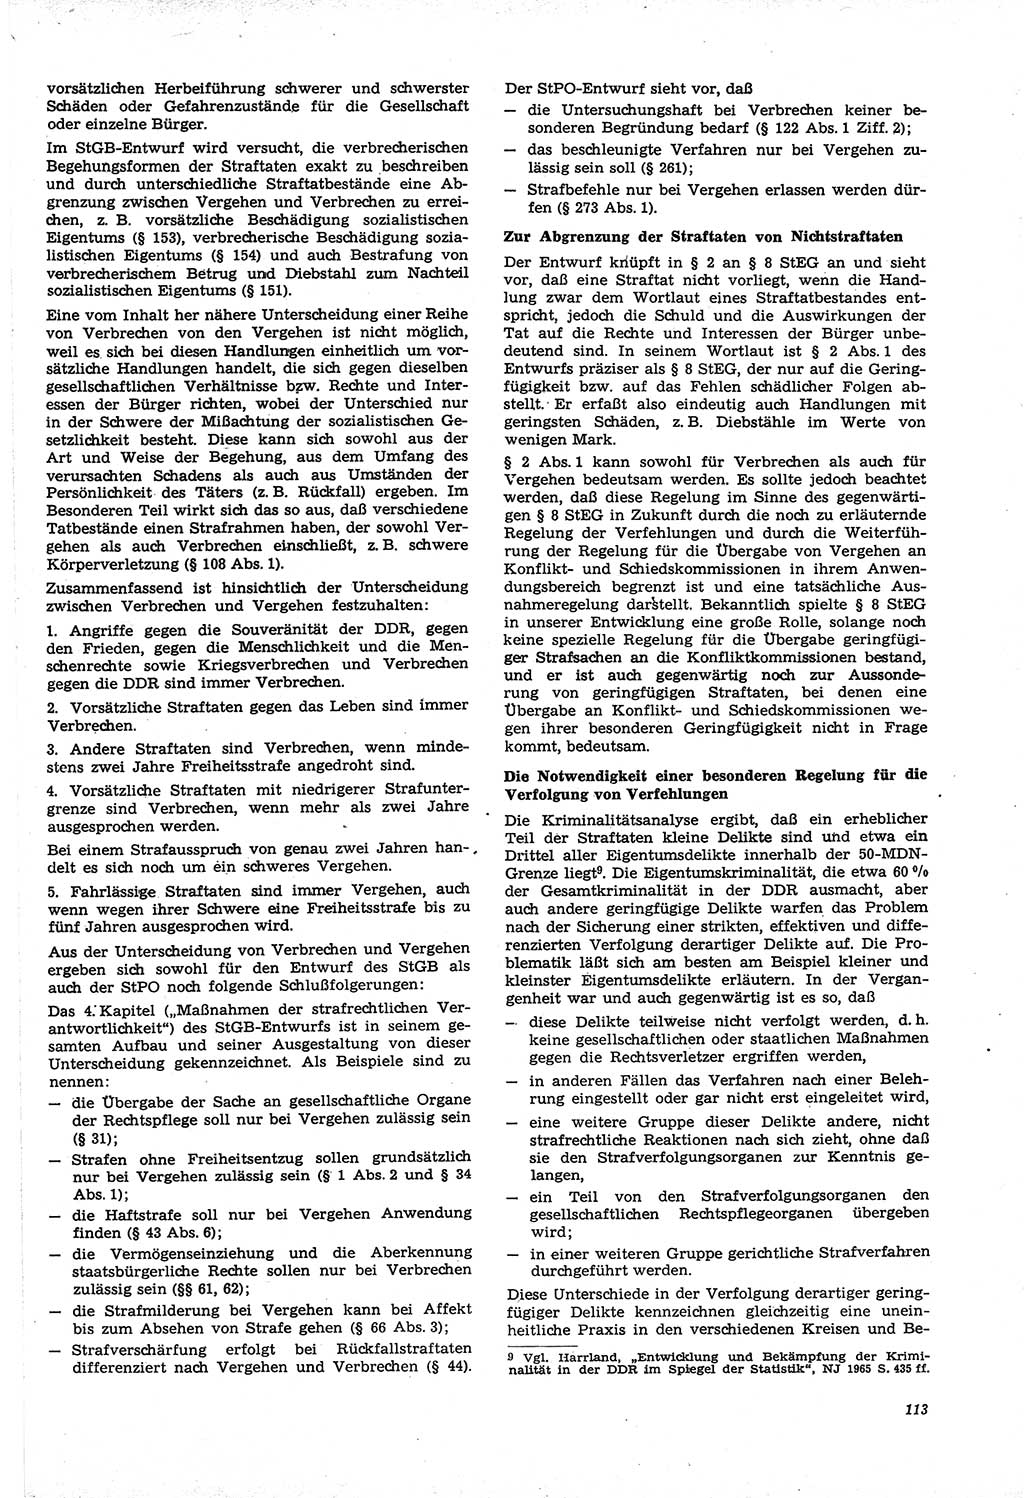 Neue Justiz (NJ), Zeitschrift für Recht und Rechtswissenschaft [Deutsche Demokratische Republik (DDR)], 21. Jahrgang 1967, Seite 113 (NJ DDR 1967, S. 113)